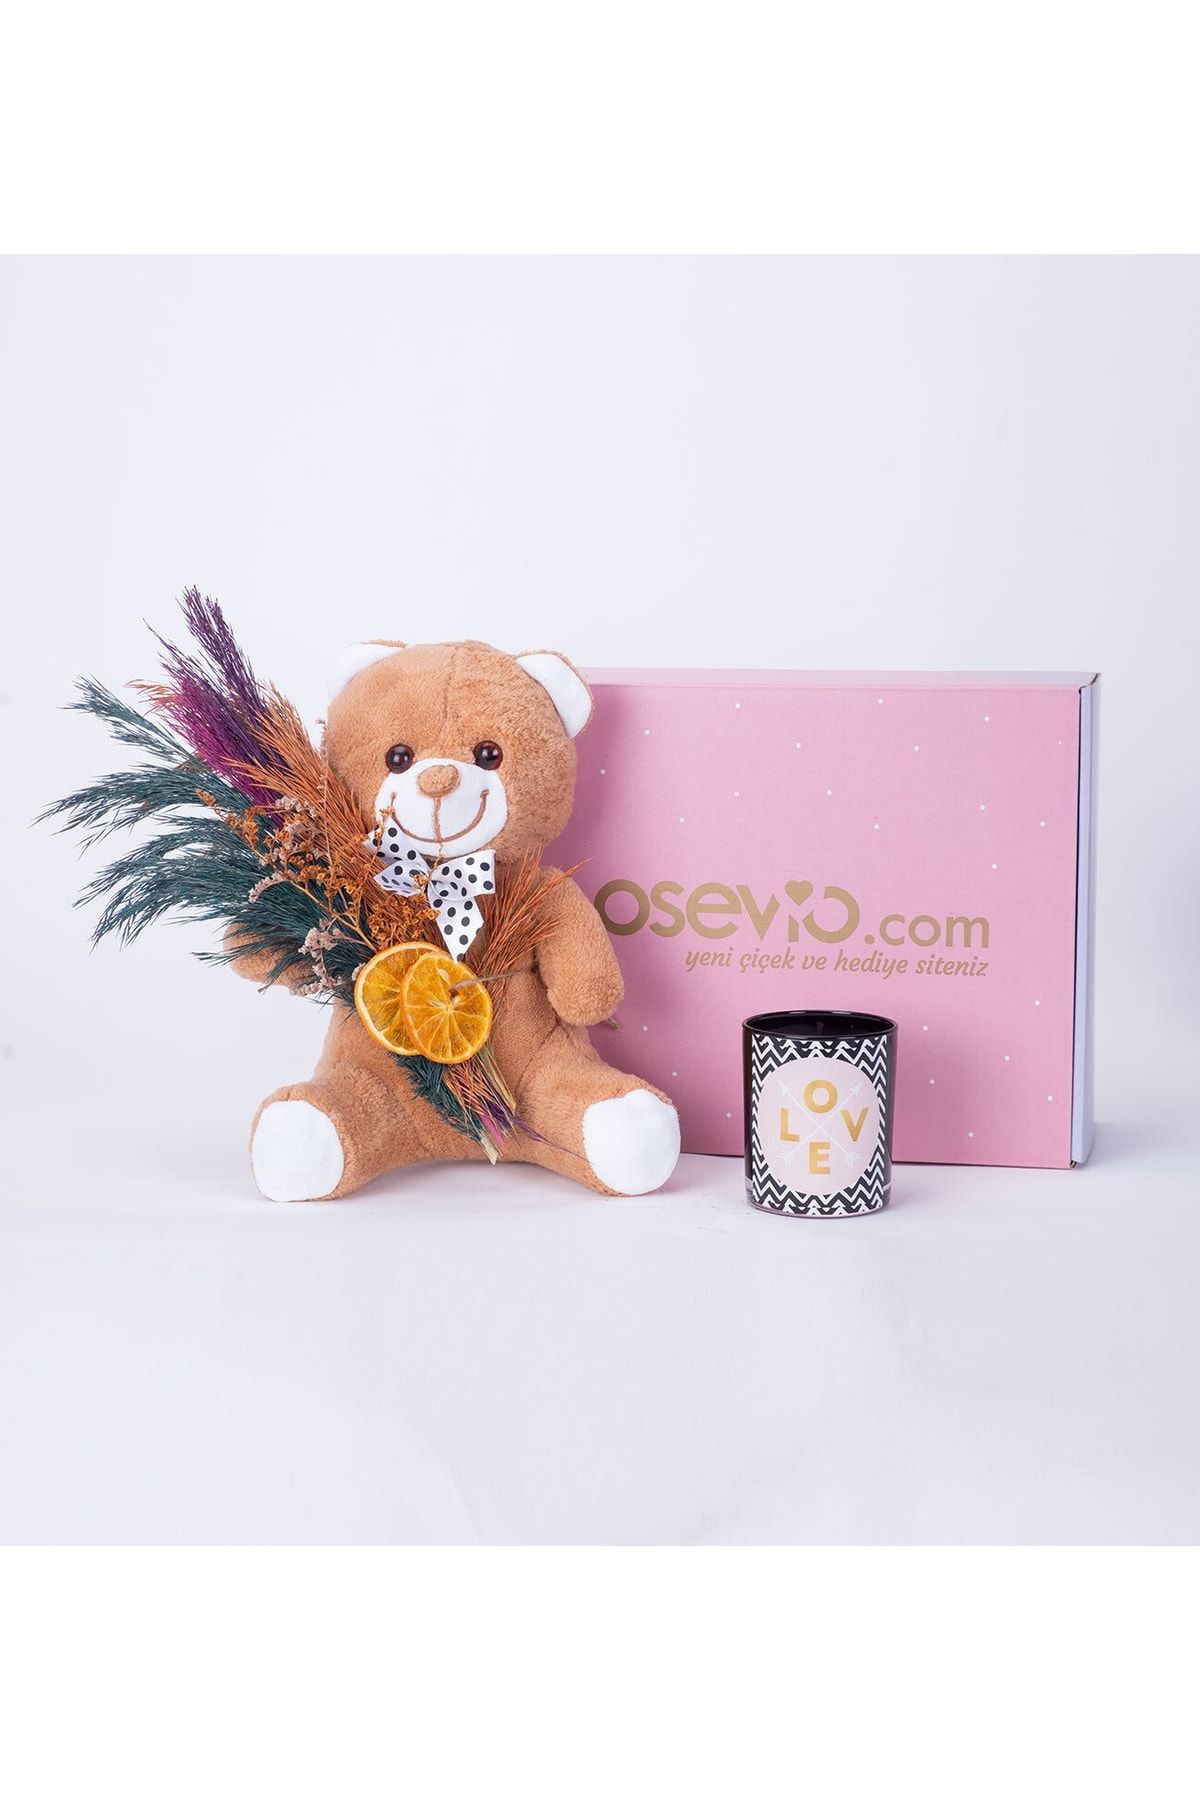 Osevio Teddy Bear Ve Love Temalı Kokulu Mum Hediye Kutusu